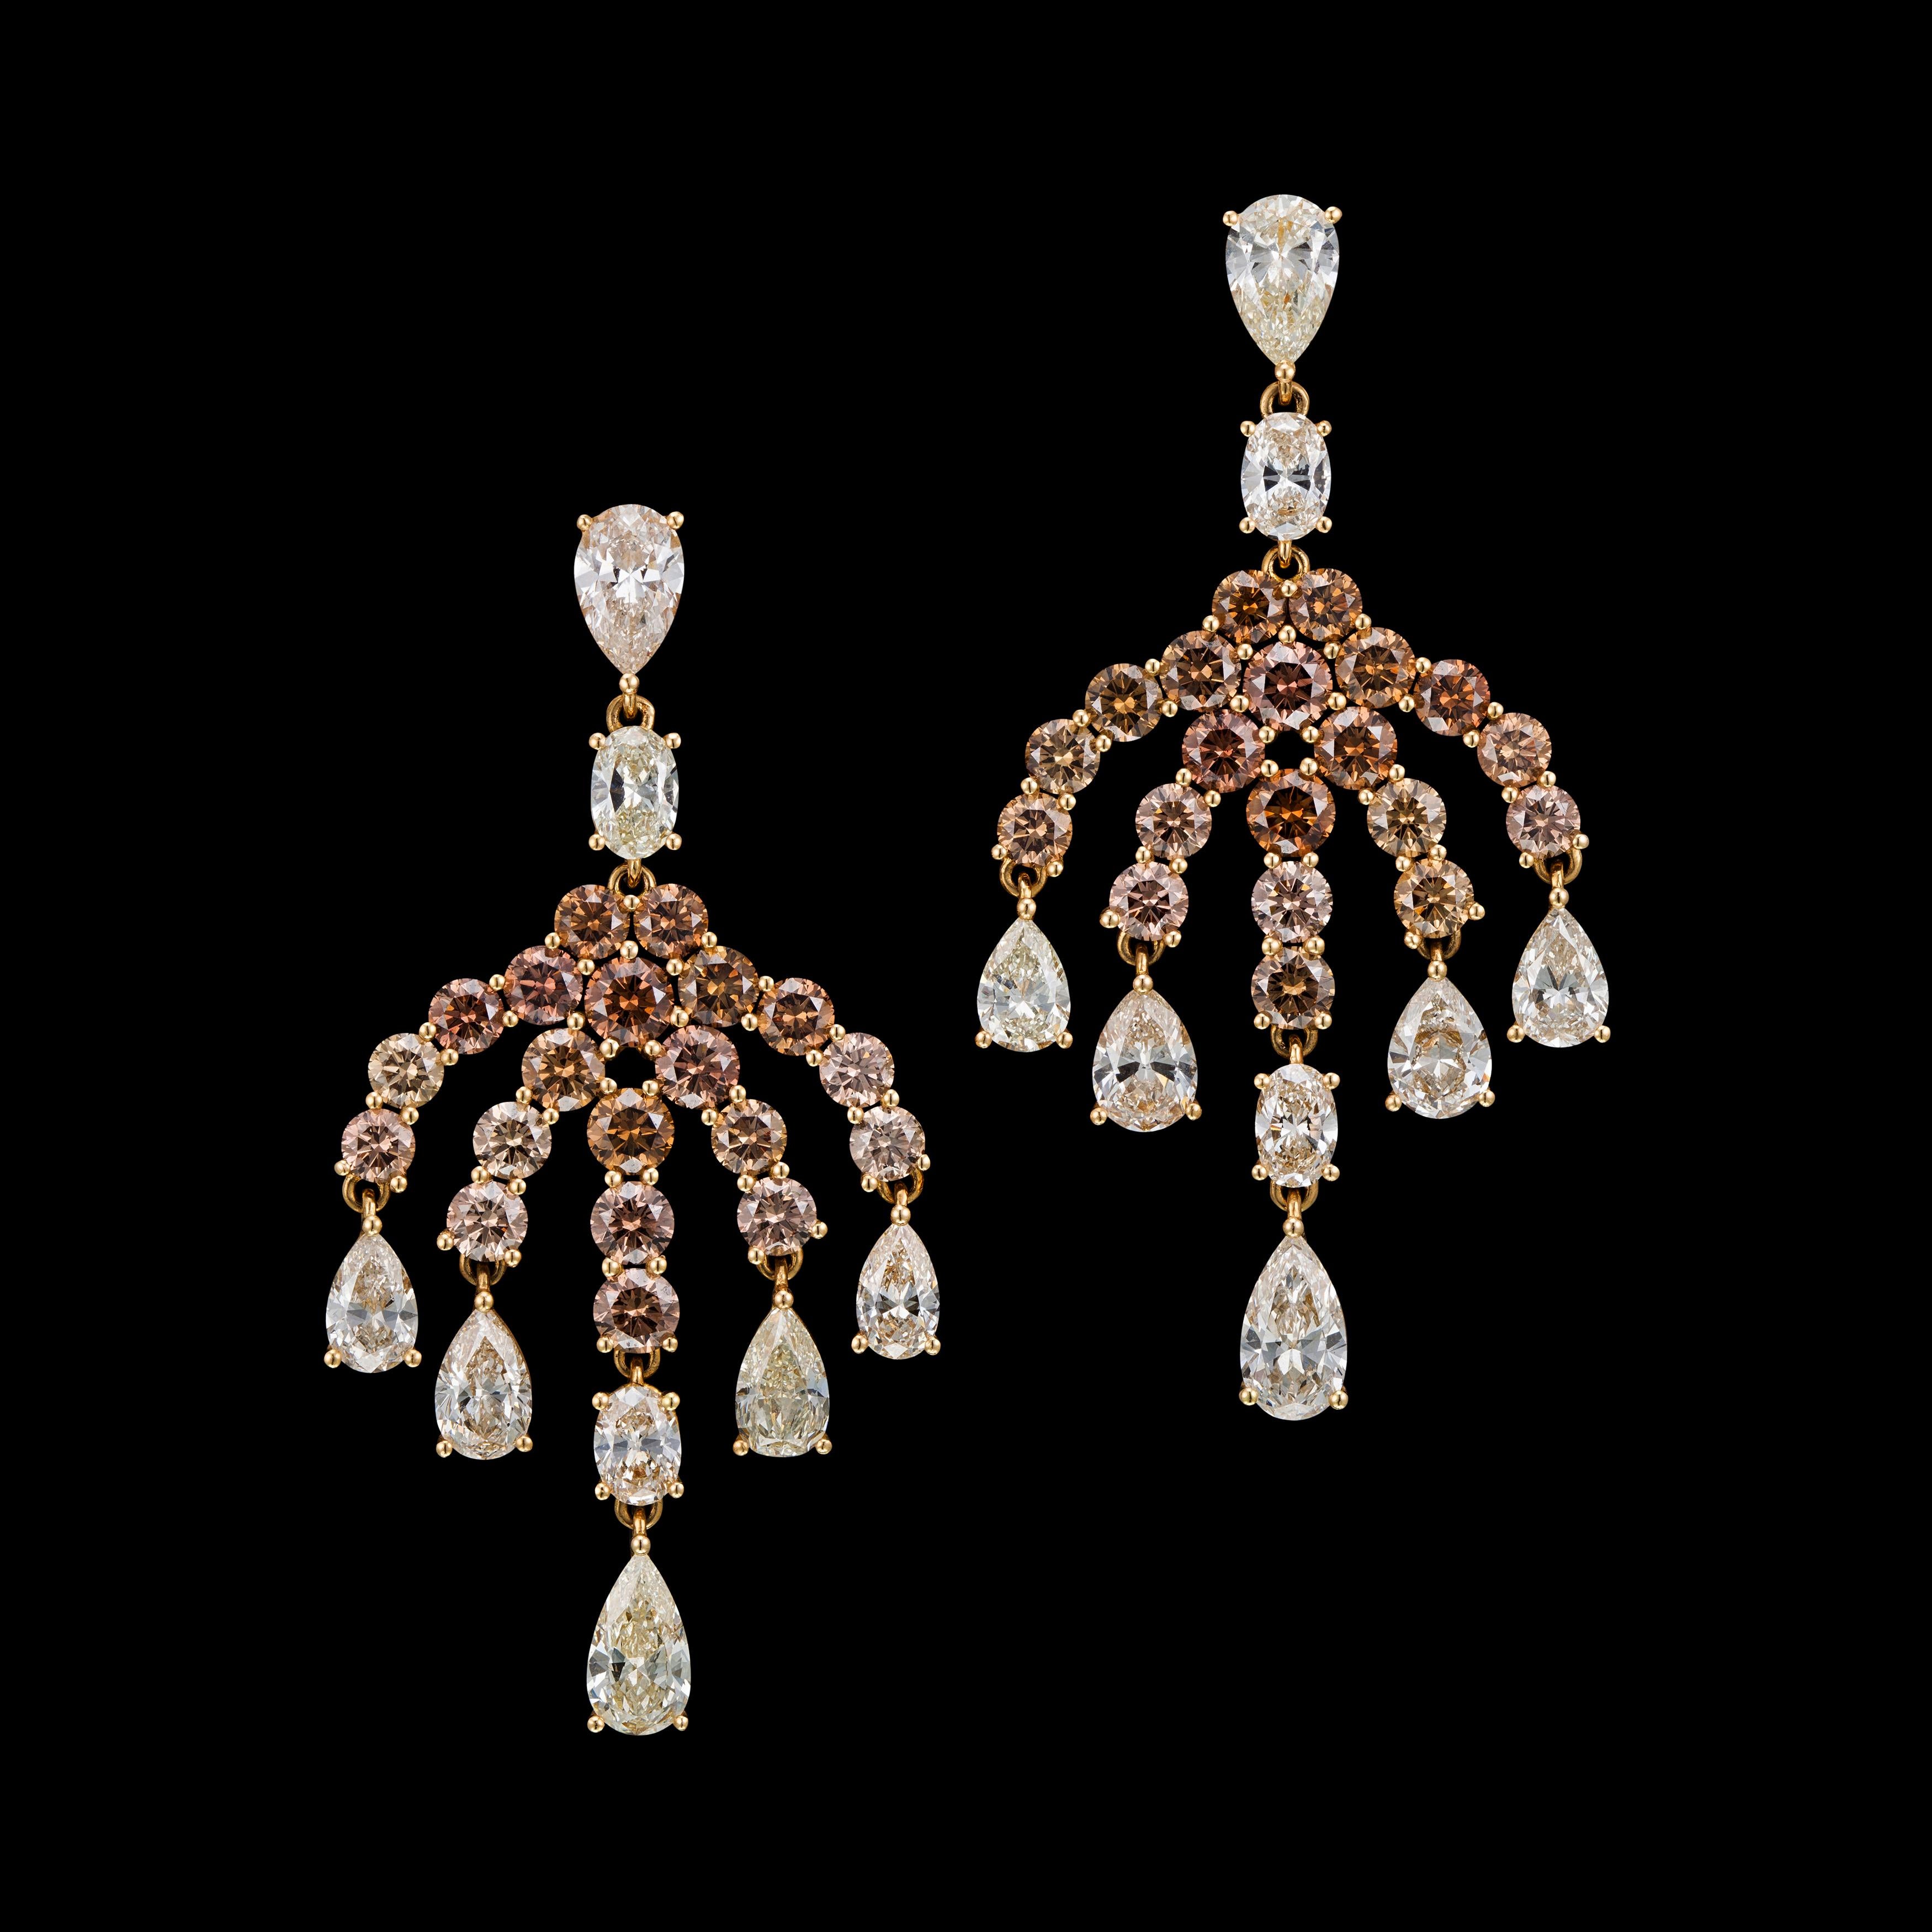 A chandelier fancy brown diamond and white diamond earrings in 18k gold.
hanging dress earrings.